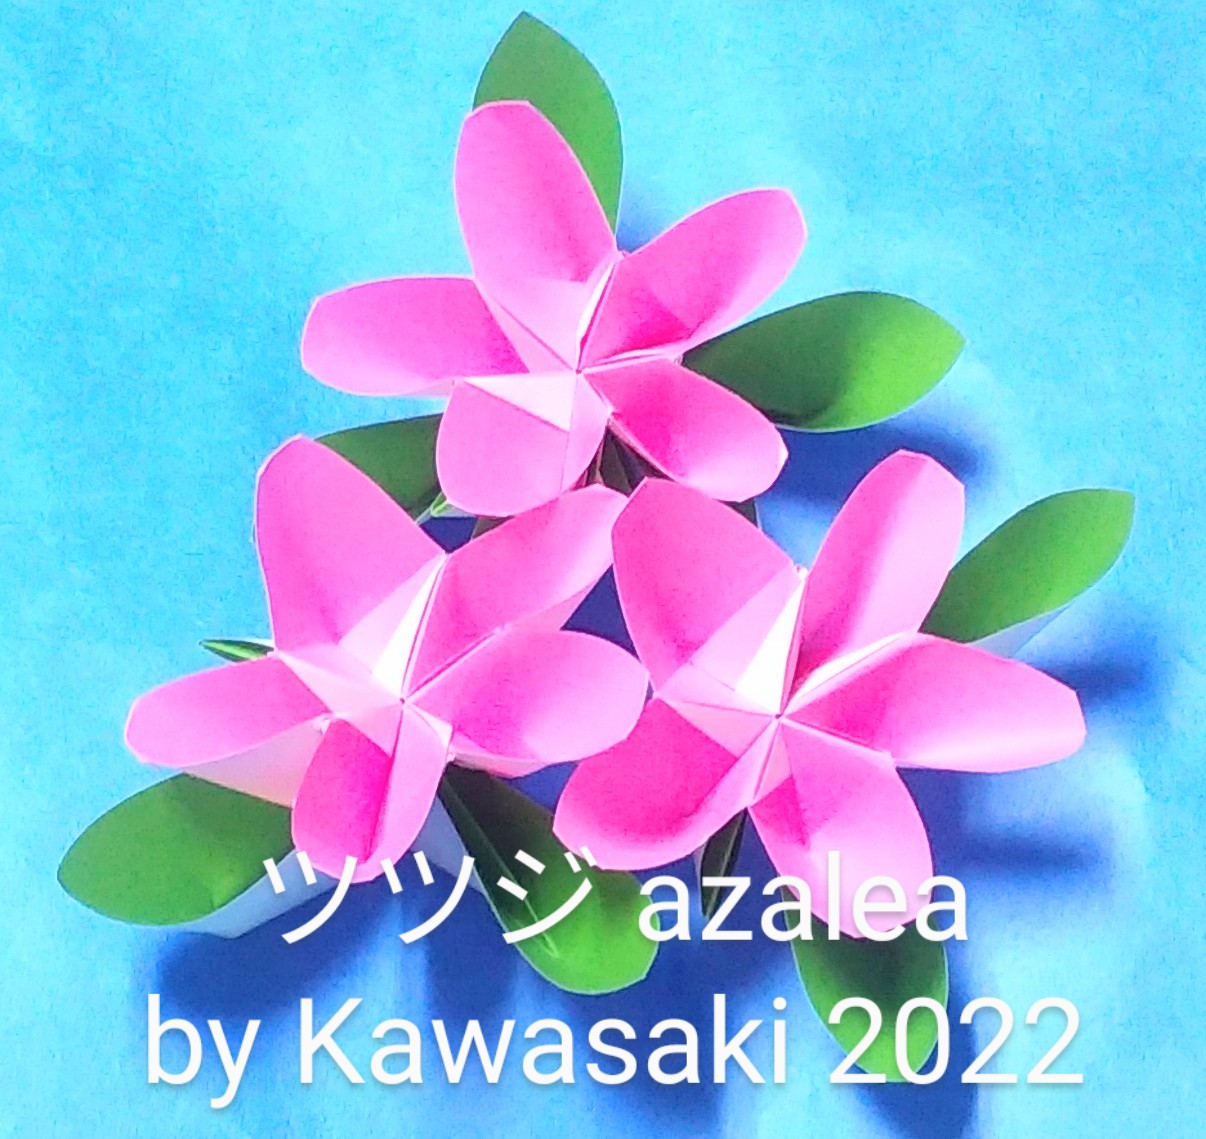 2022/11/28(Mon) 22:21「ツツジ azalea(作2022年11月28日16時8分)  」川崎敏和 T.Kawasaki 
（創作者 Author：川崎敏和 T.Kawasaki ,　製作者 Folder：川崎敏和 T.Kawasaki ,　出典 Source：Kawasaki origami kit 2022）
 誕生日(11/26)にできたバースデーアザレアの葉っぱを改良したことで、思い通りのツツジが表現できました。2022年マイベスト同率2位作品です。 